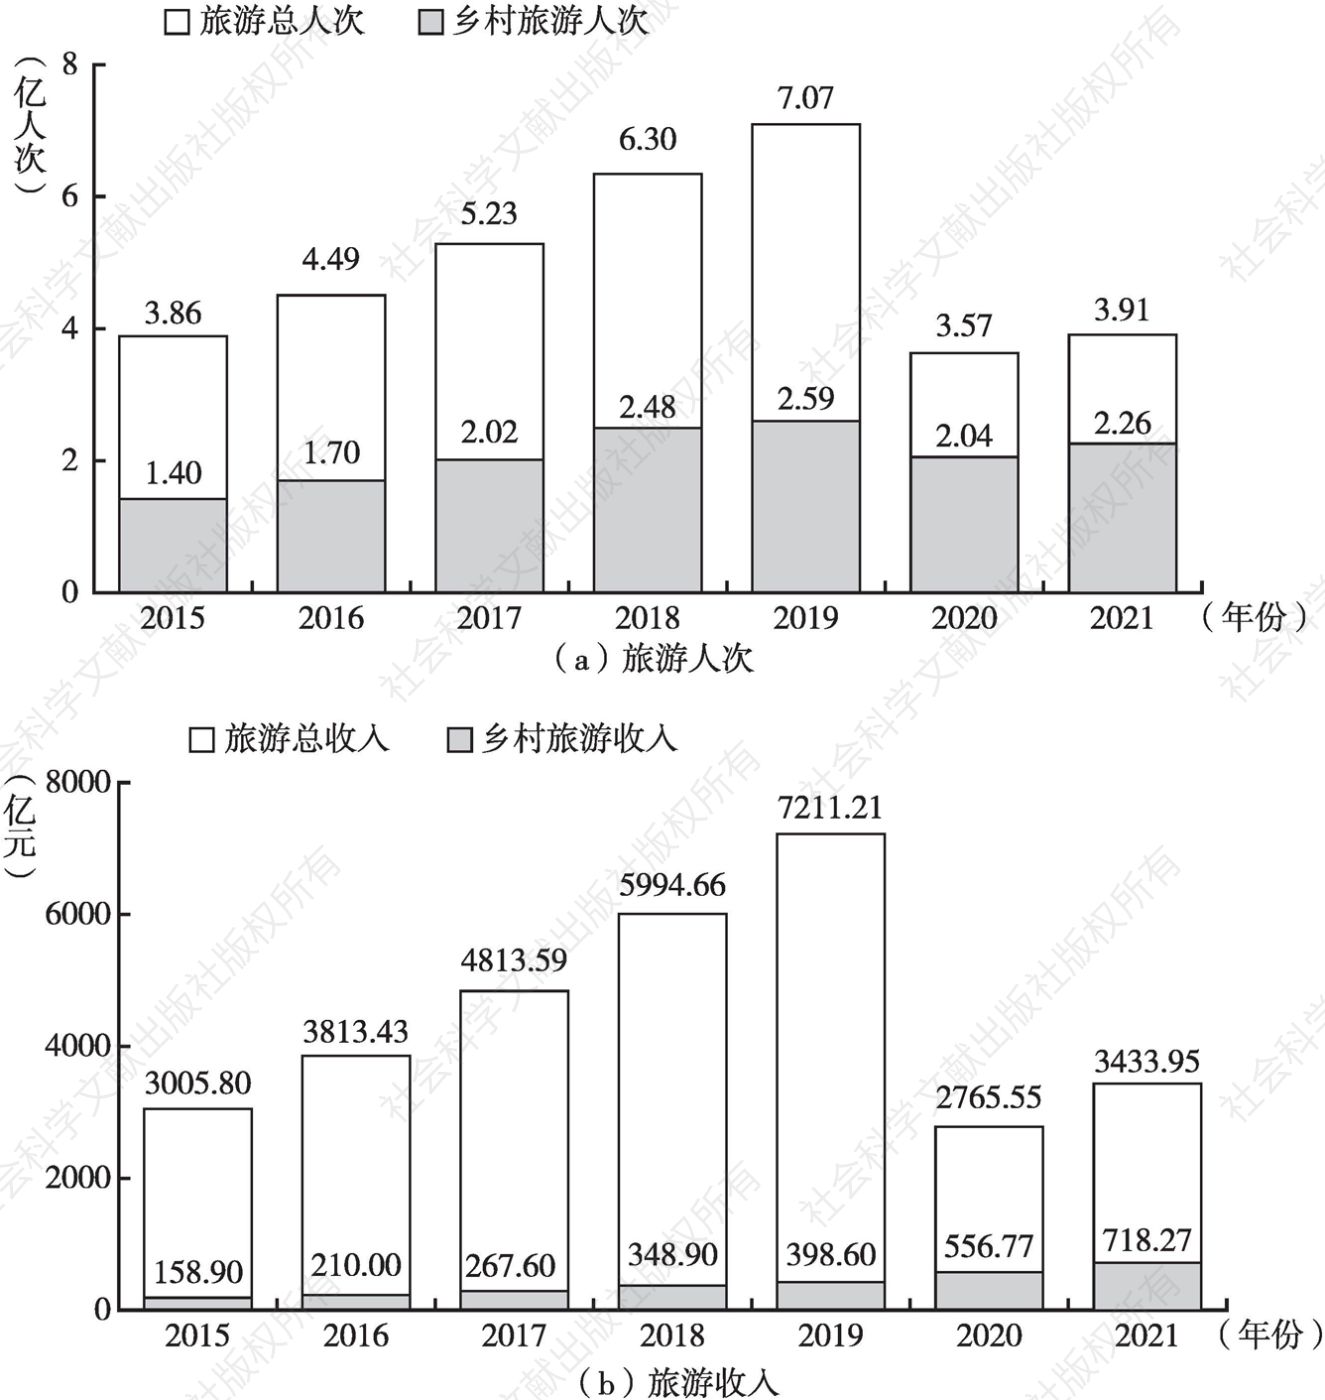 图1 2015～2021年陕西省旅游、乡村旅游人次及收入情况